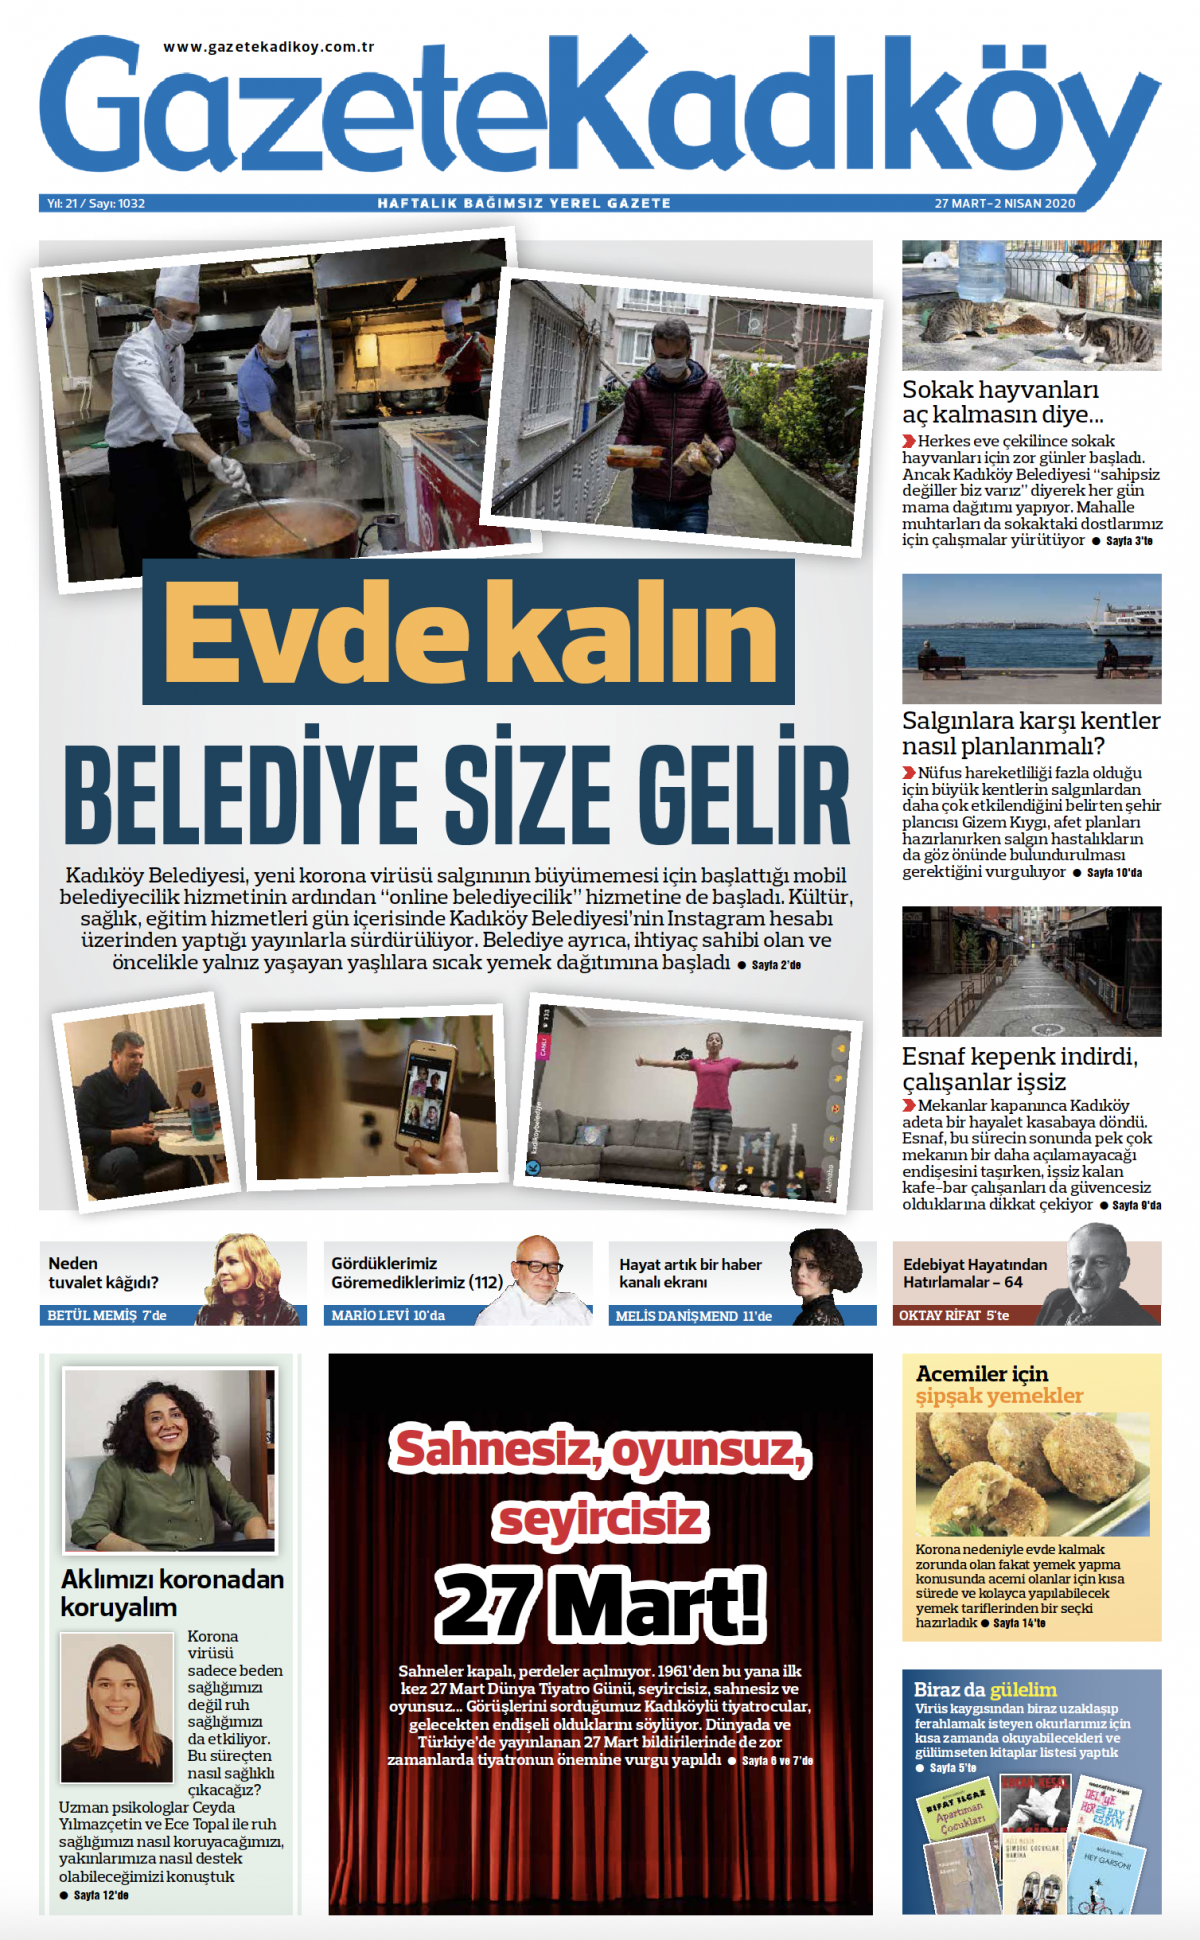 Gazete Kadıköy - 1032. Sayı